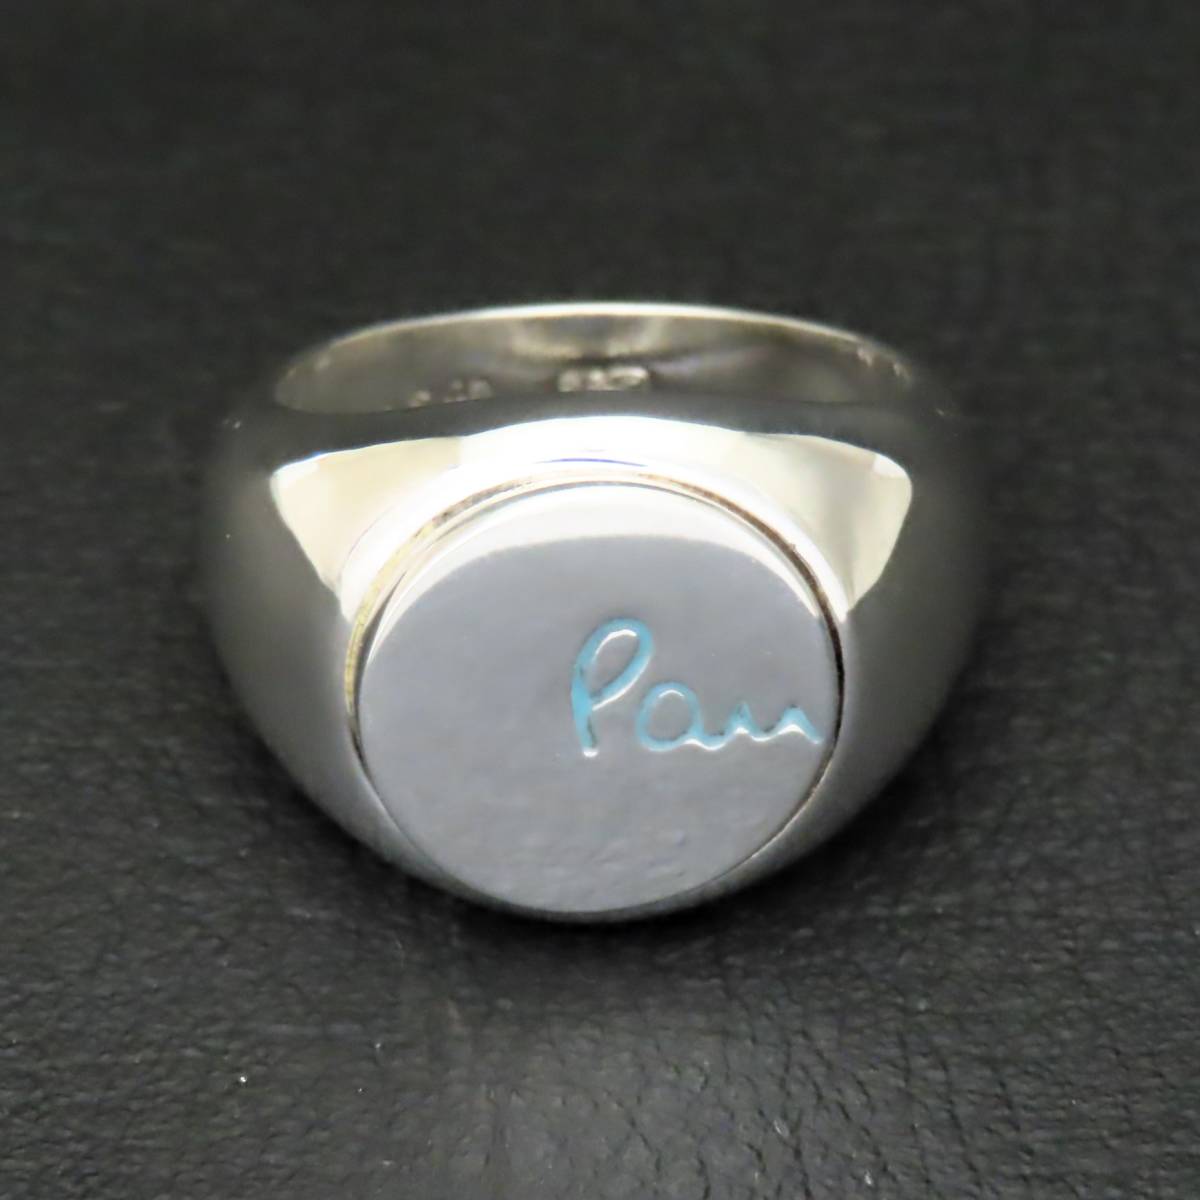 新品同様 美品 Paul Smith ポールスミス 丸型印台 リング 指輪 メンズ シルバー925 20号 14.4g_画像3